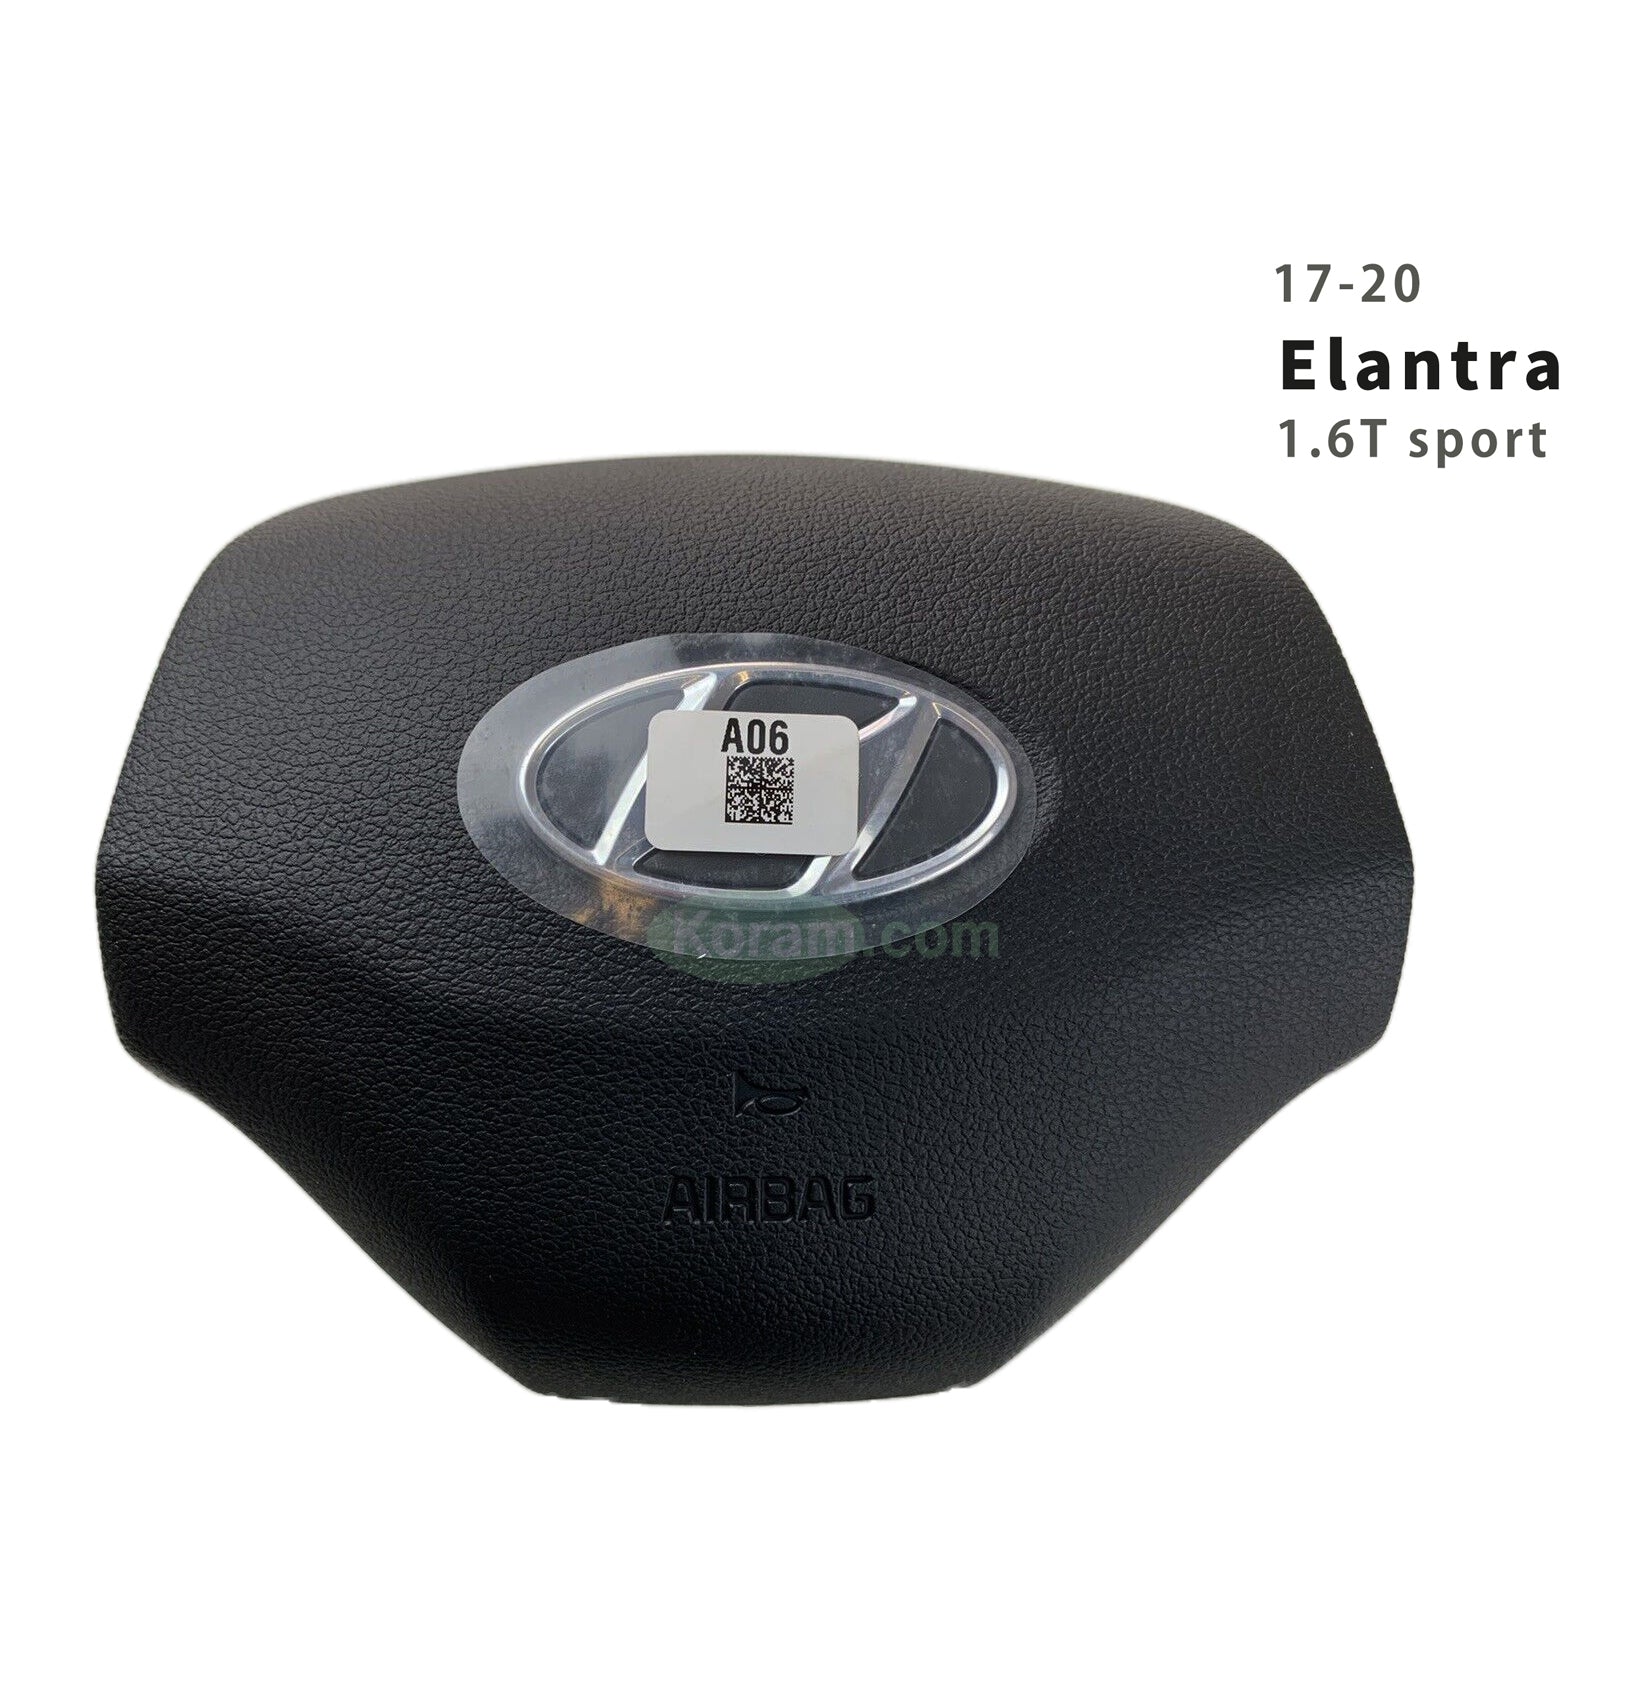 2017-2020 Elantra SPORT 1.6LT steering wheel  Airbag  56900-F2950TRY  New Original